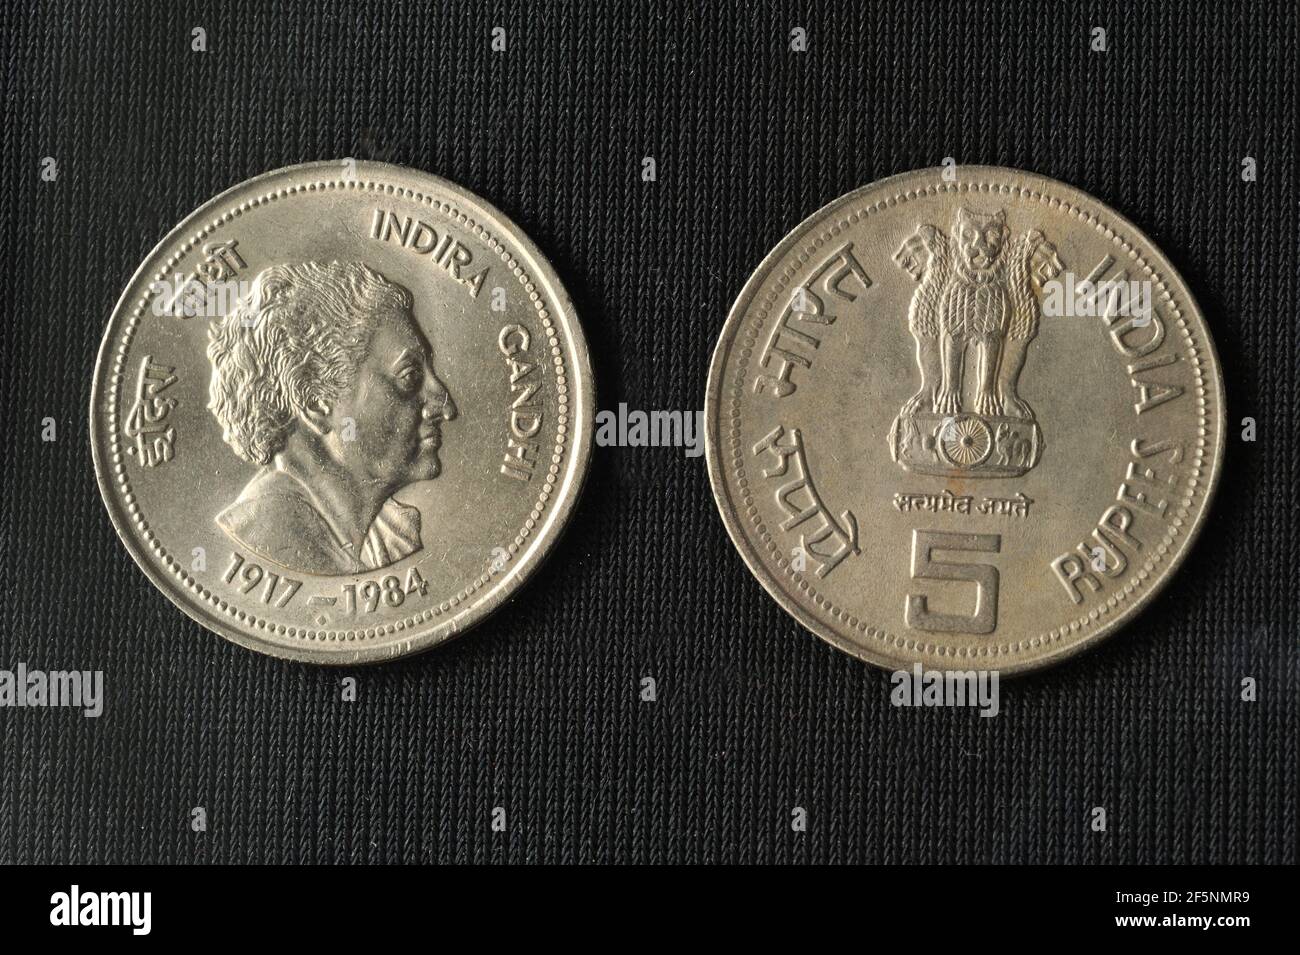 Mumbai Maharashtra Indien Asien März 21 2021 Reserve Bank of indien-Gesicht von Indira Gandhi auf alter fünf-Rupien-Münze 1917-1984 indische Währung Stockfoto